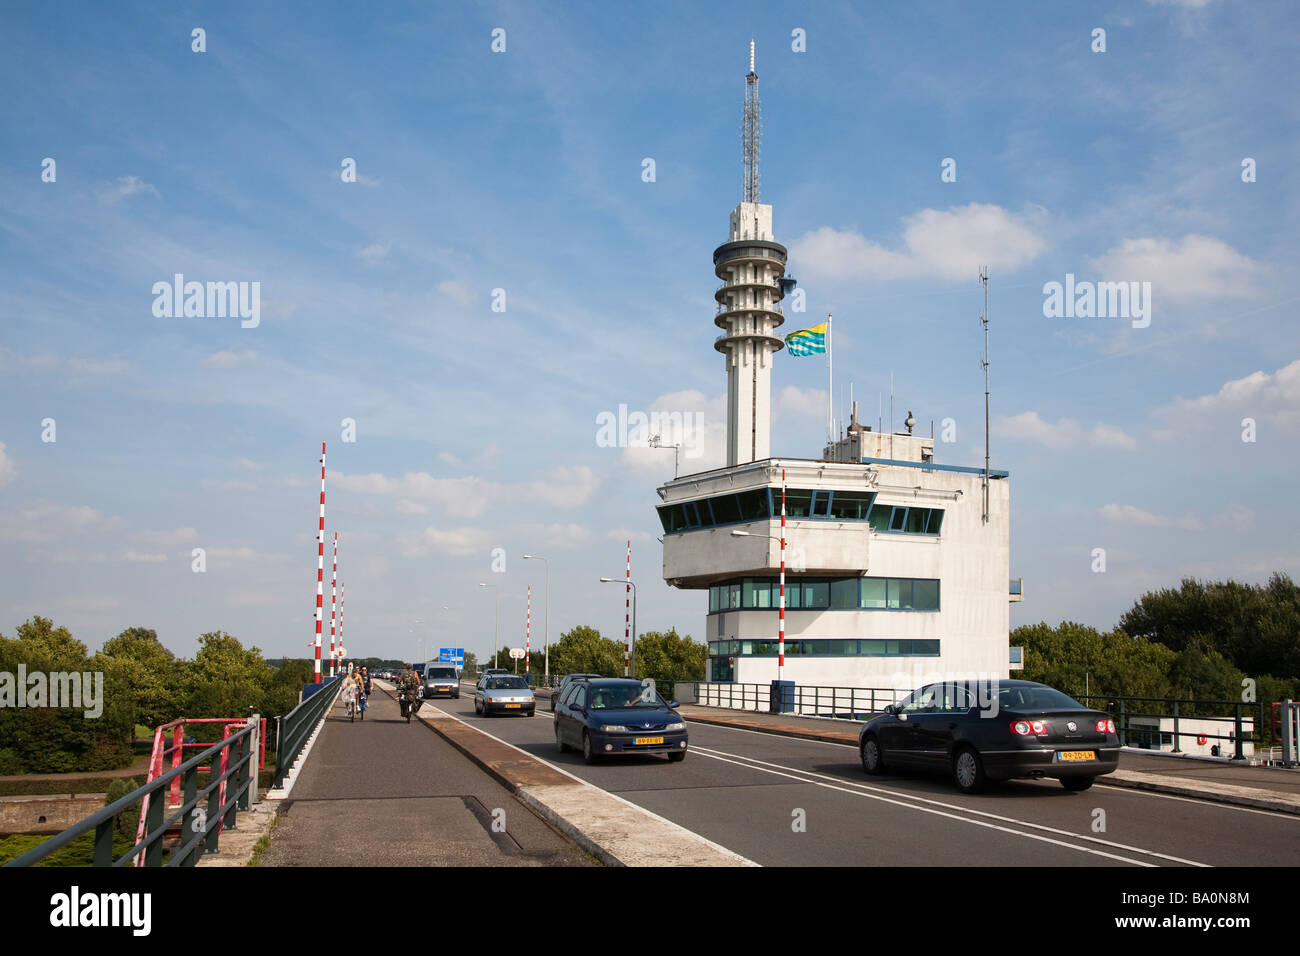 Kontrollturm für die Hubbrücke in Houttribdijk Deich zwischen Ijsselmeer und Markermeer Lelystad Friesland Niederlande Stockfoto